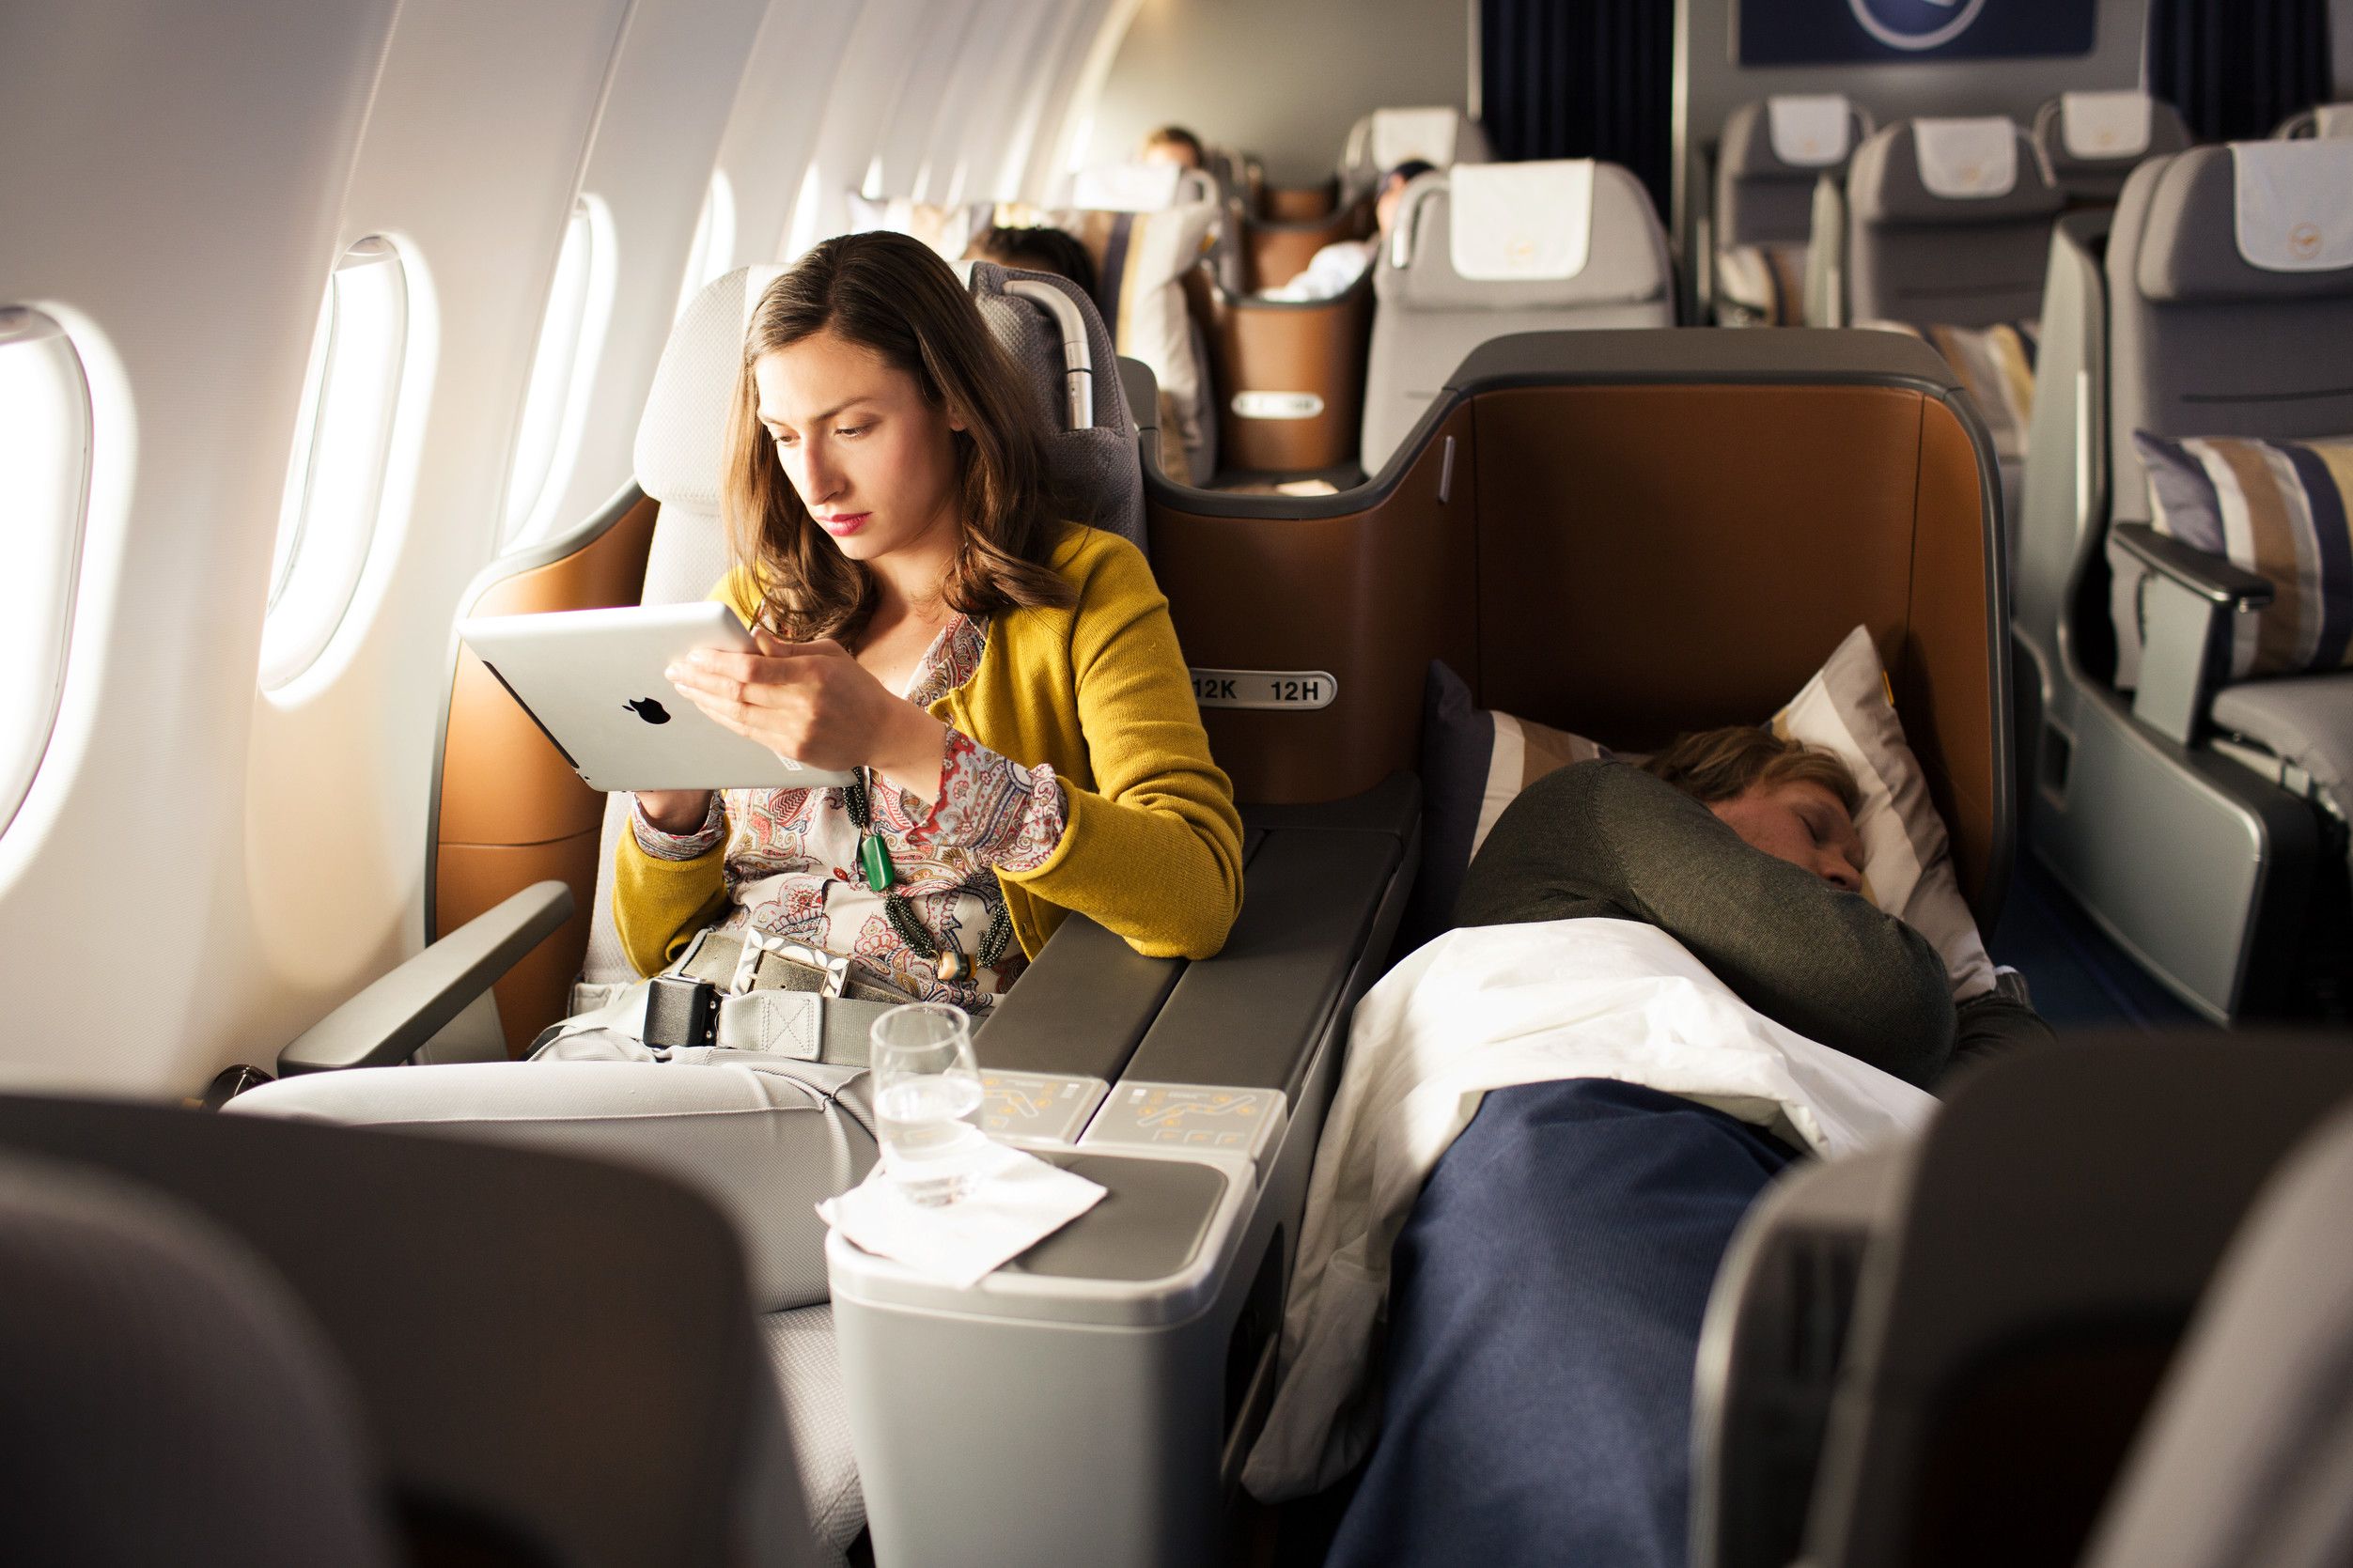 Интернет в самолете: можно ли пользоваться wifi во время полета, список авиакомпаний, предоставляющих услугу